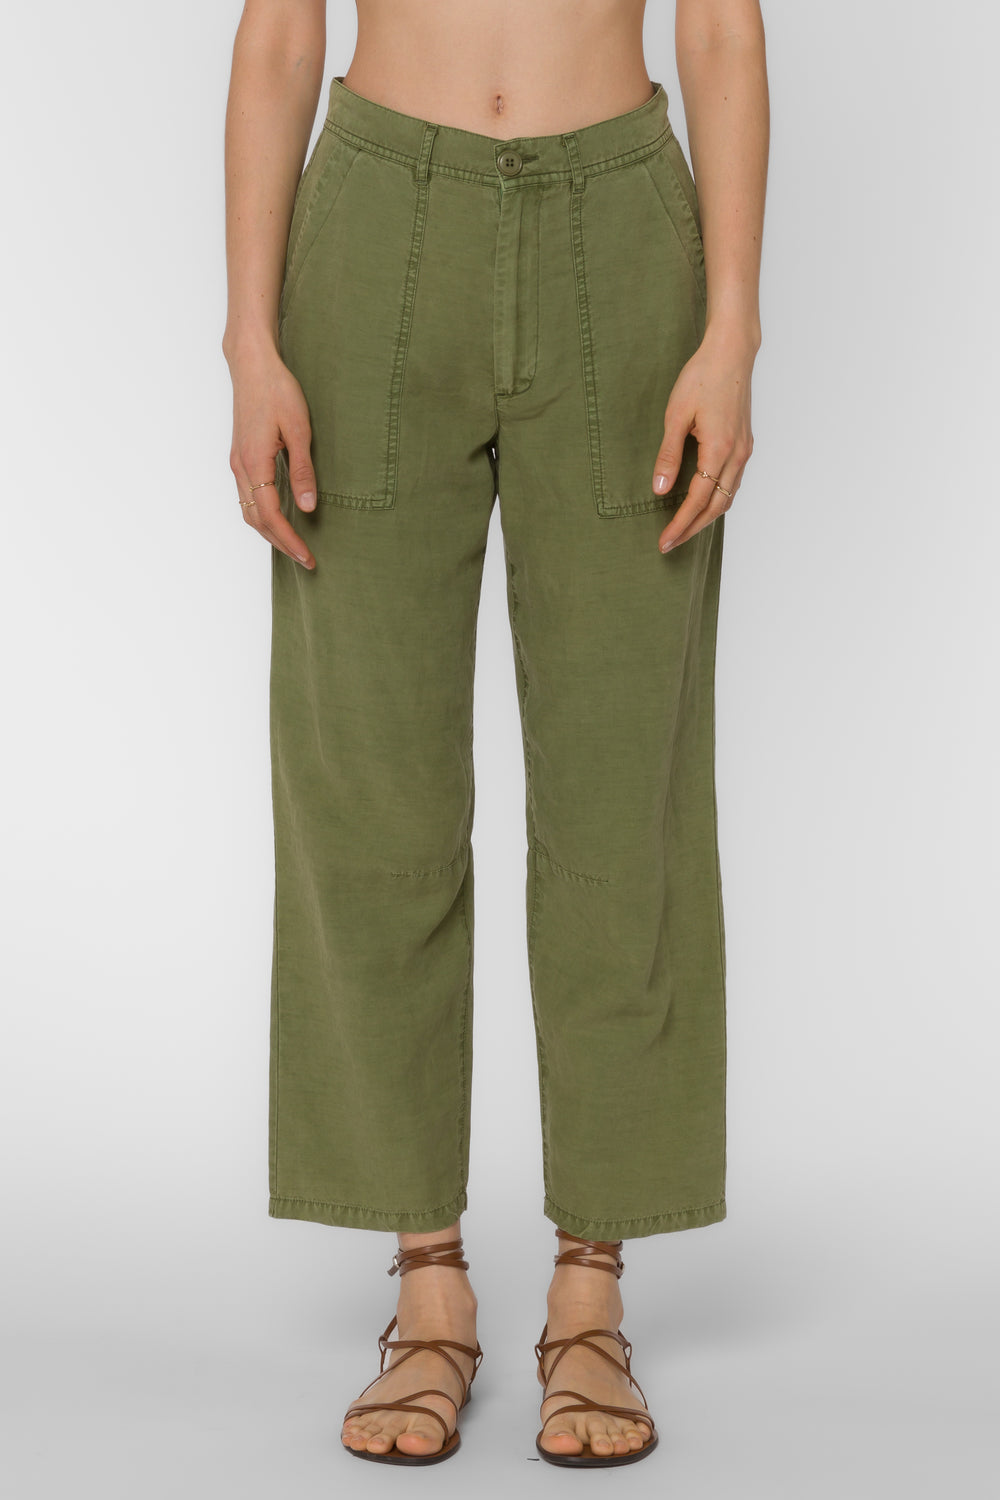 Sydney Tea Leaf Pants - Pants - Velvet Heart Clothing